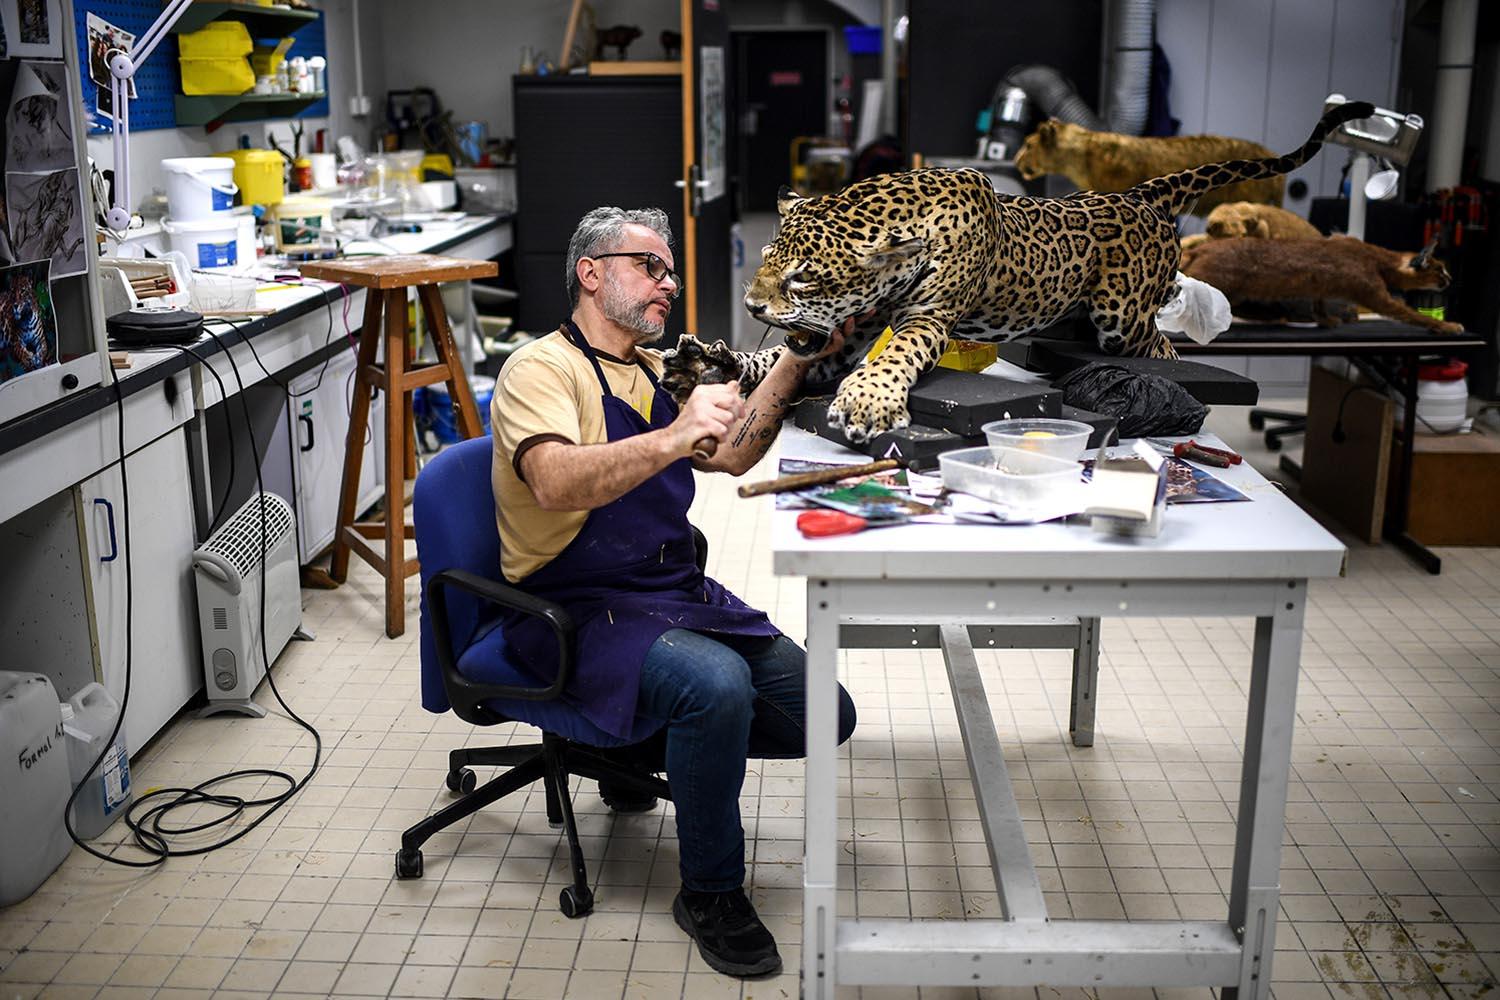 Shot-of-the-day-Taxidermist-Vincent-Cuisset-jaguar-Museum-Naturelle-Paris-SPACEBAR-Hero